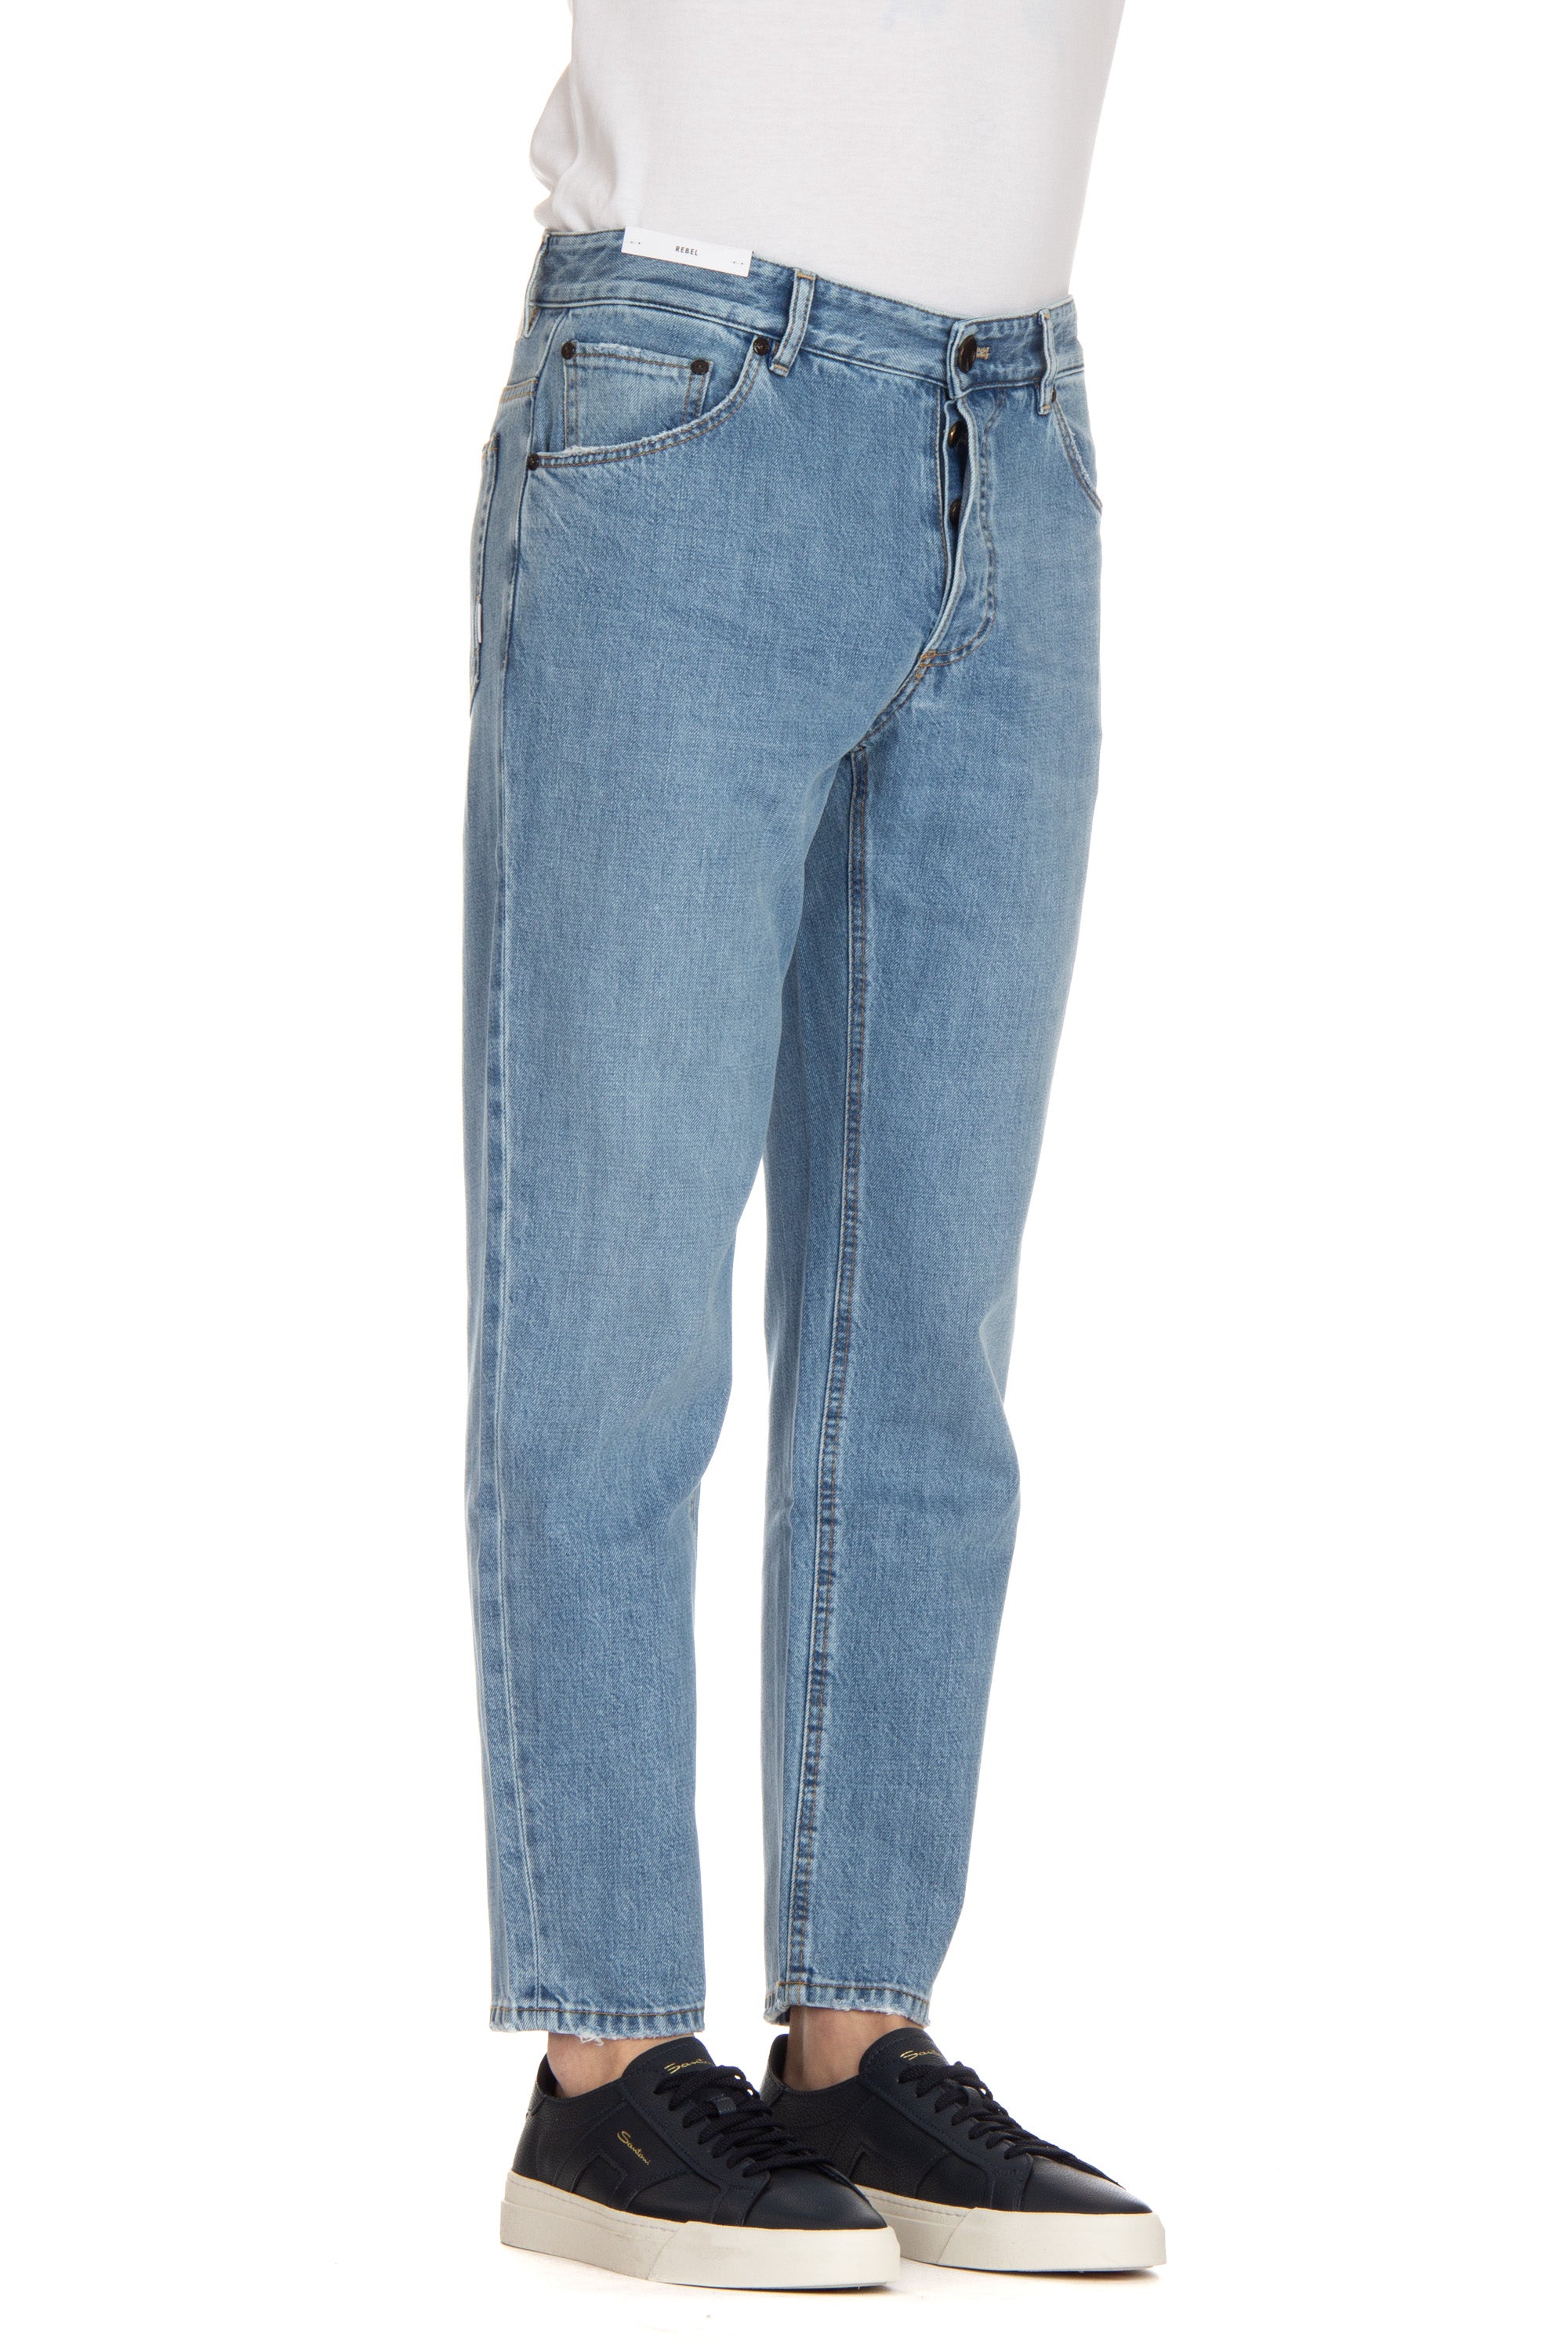 Jeans in cotone-lyocel lavaggio chiaro Rebel fit